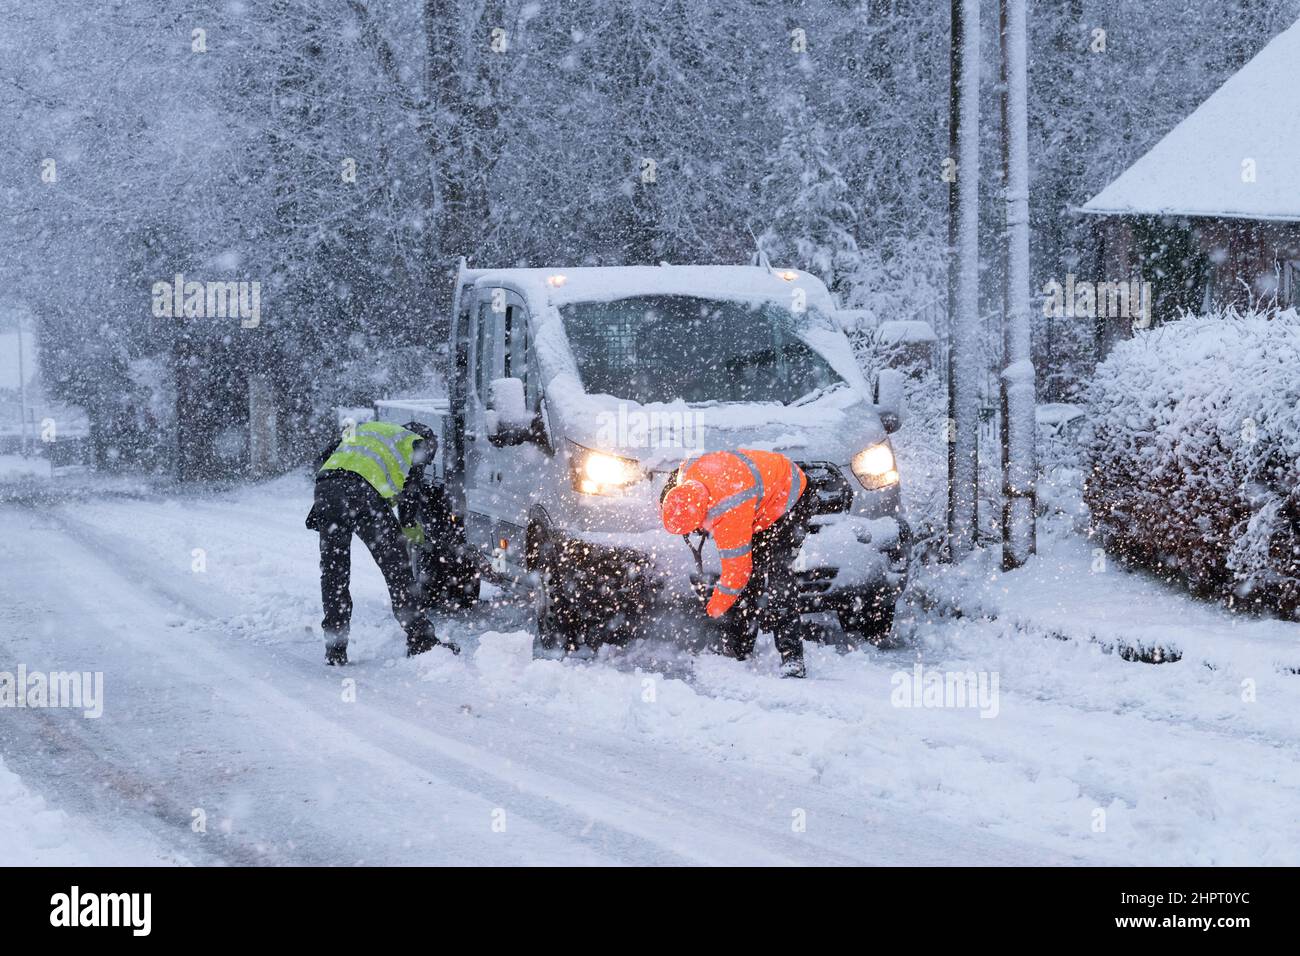 Les travailleurs du matin se sont enlisés dans la neige pour déneiger la neige du camion qui est coincé sur une légère colline à Killaarn, Stirling, Écosse, Royaume-Uni Banque D'Images